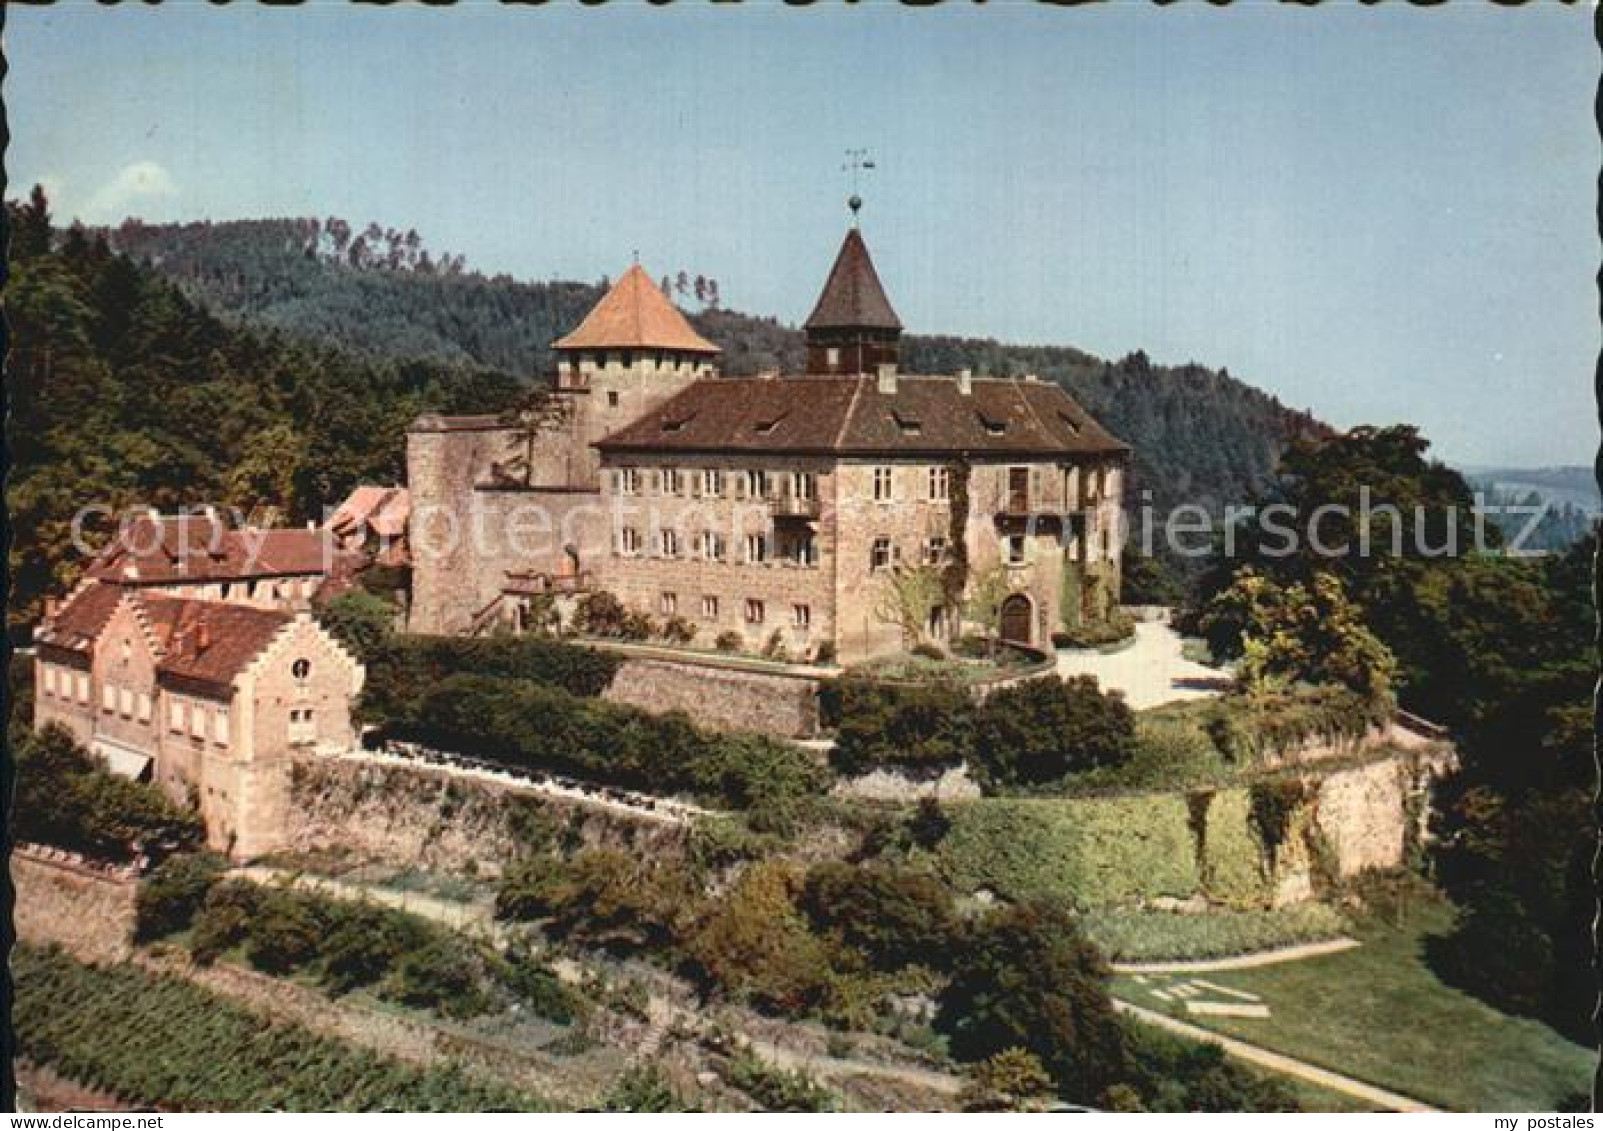 72527459 Gernsbach Terrasse-Gaststaette Schloss Eberstein  Gernsbach - Gernsbach